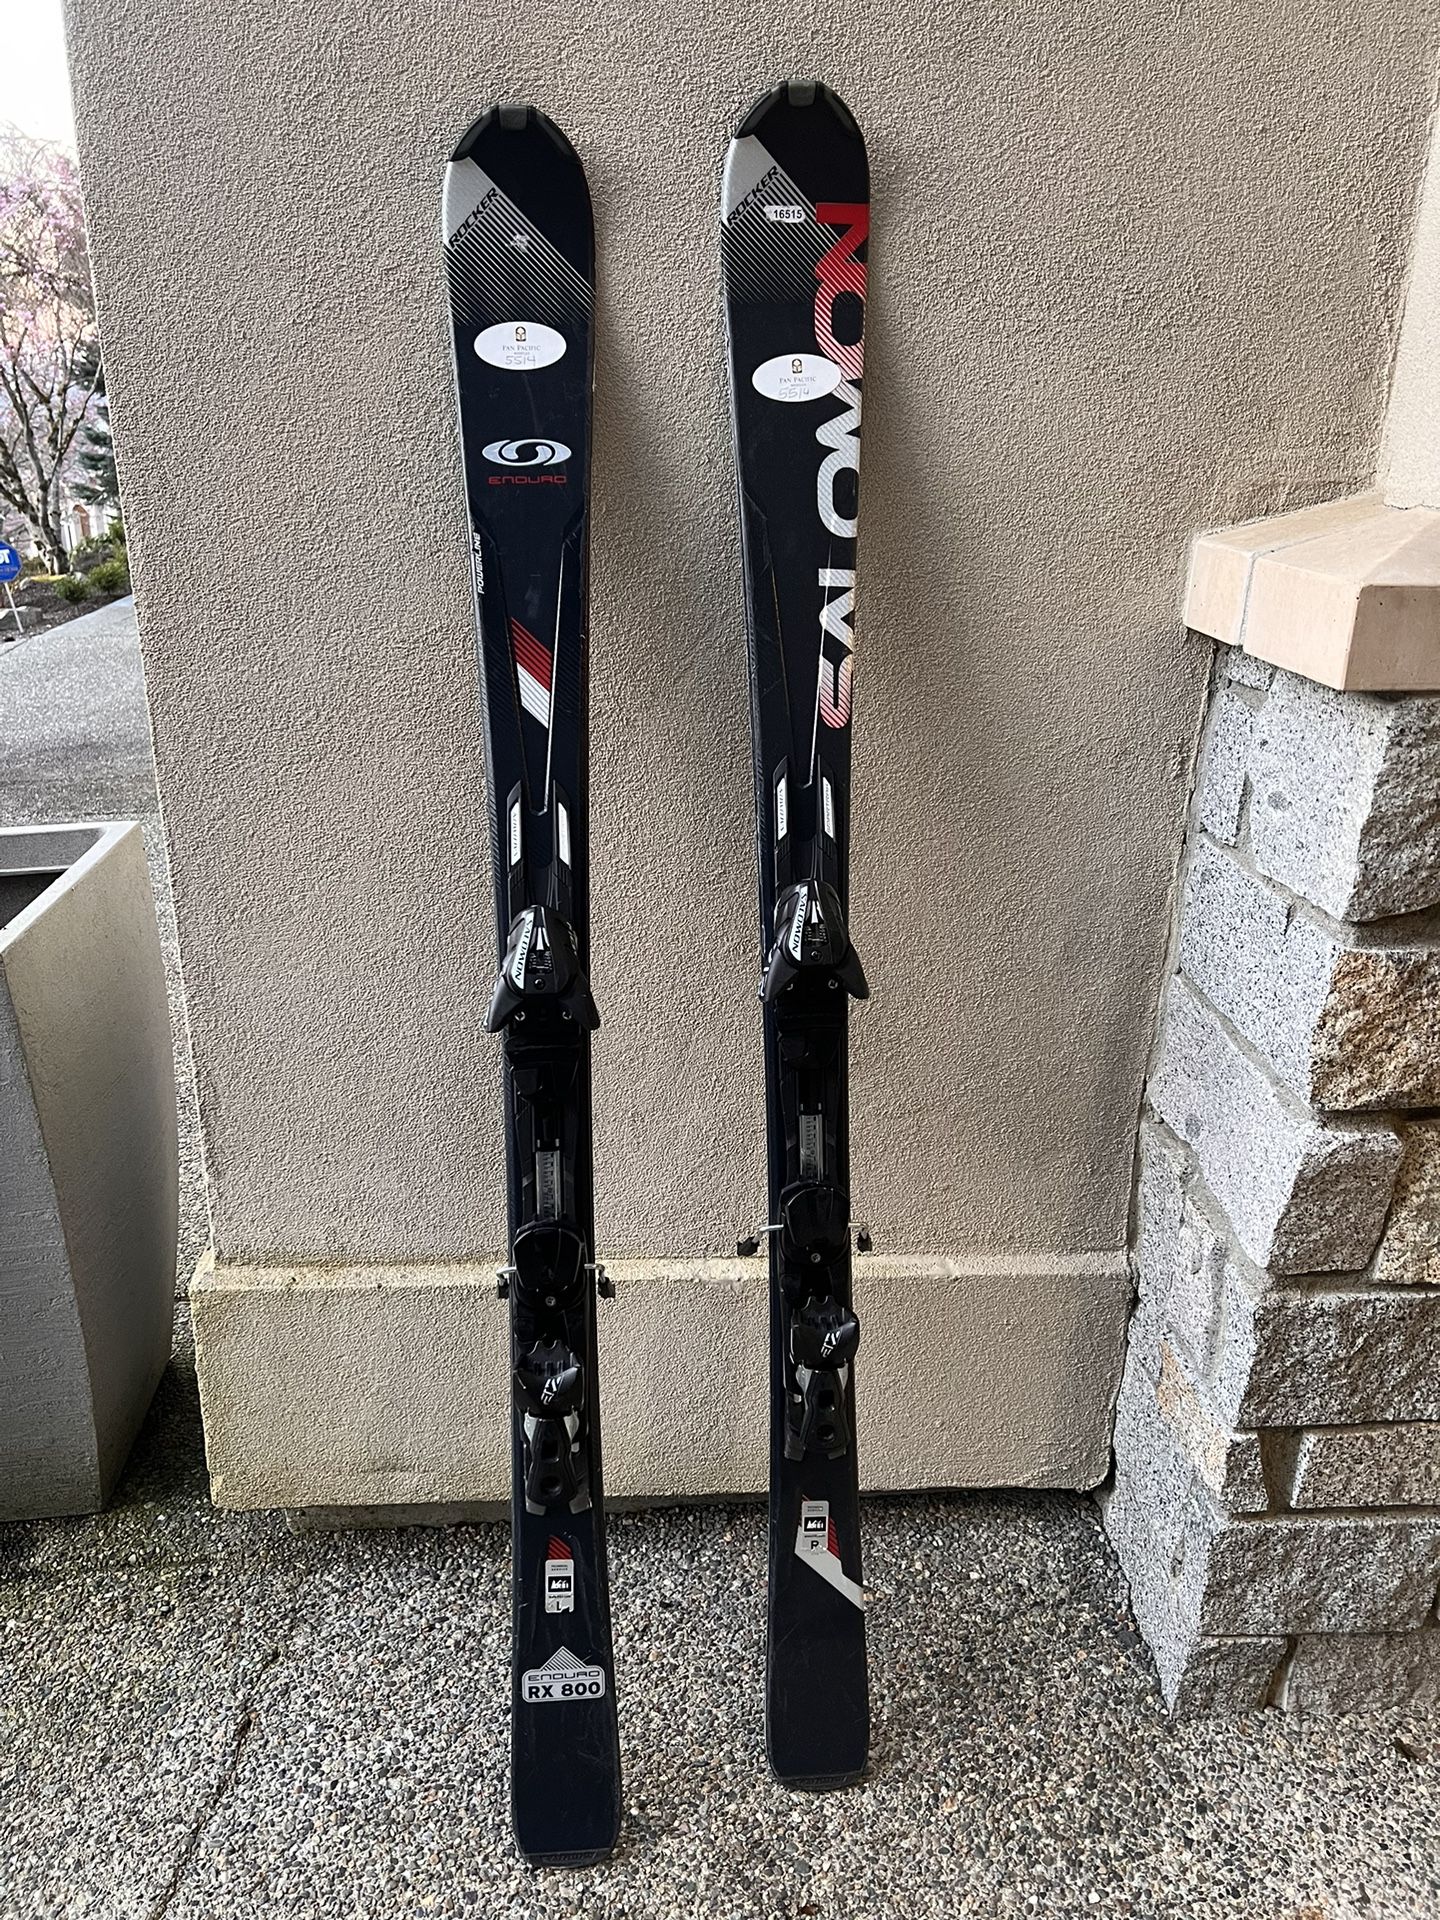 Salomon Enduro RX800 skis